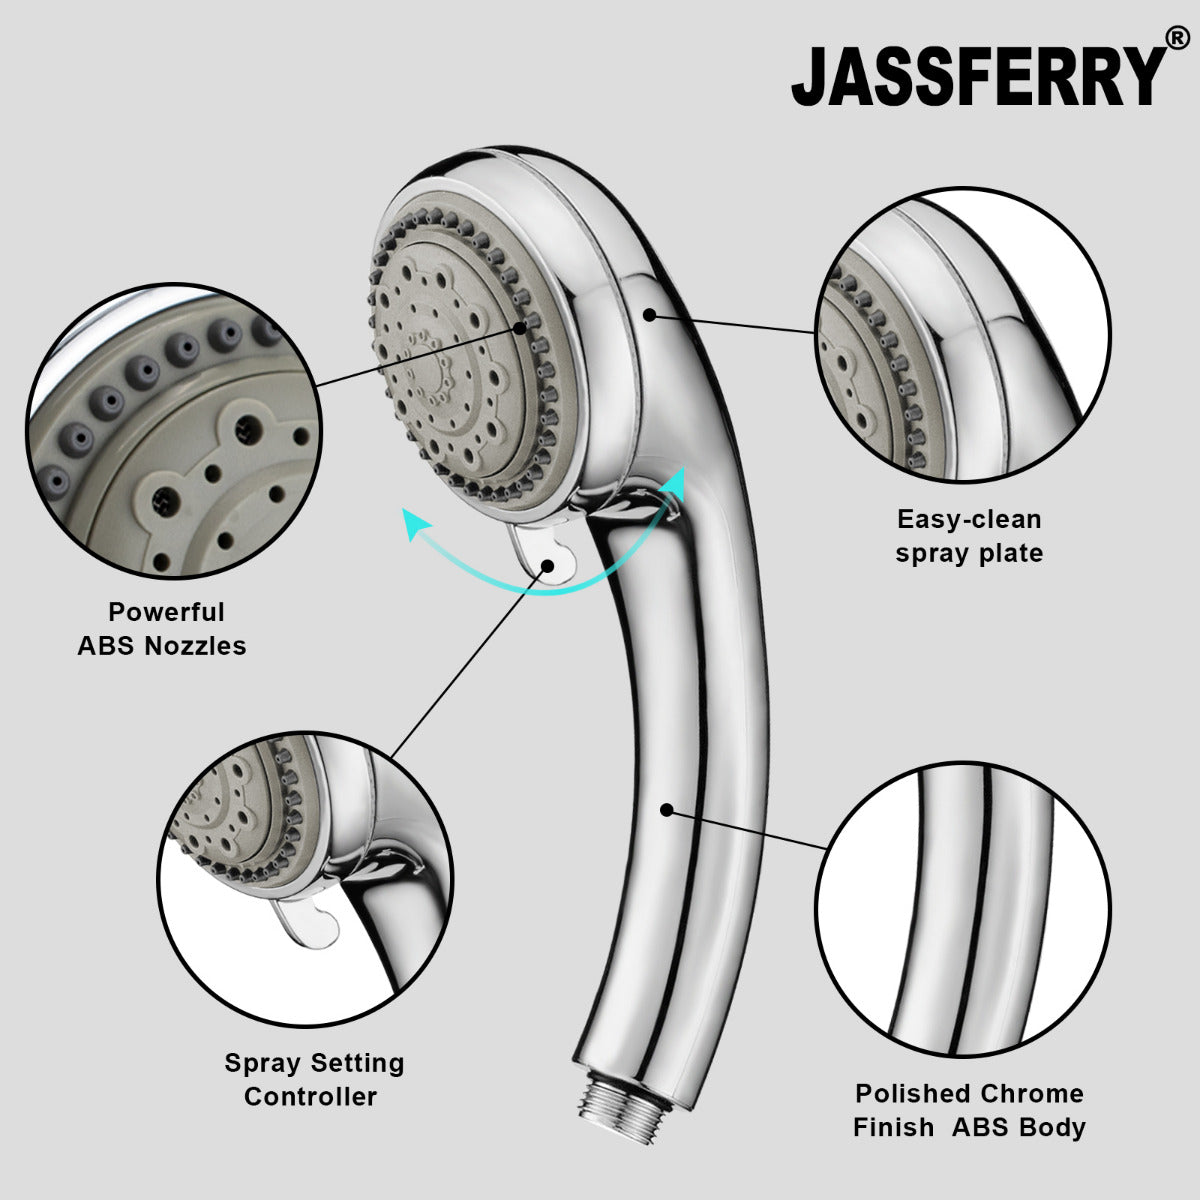 JassferryJASSFERRY New 5 Mode Bath Shower Head Set Massage Spray Hand Hodler ChromeShower Heads